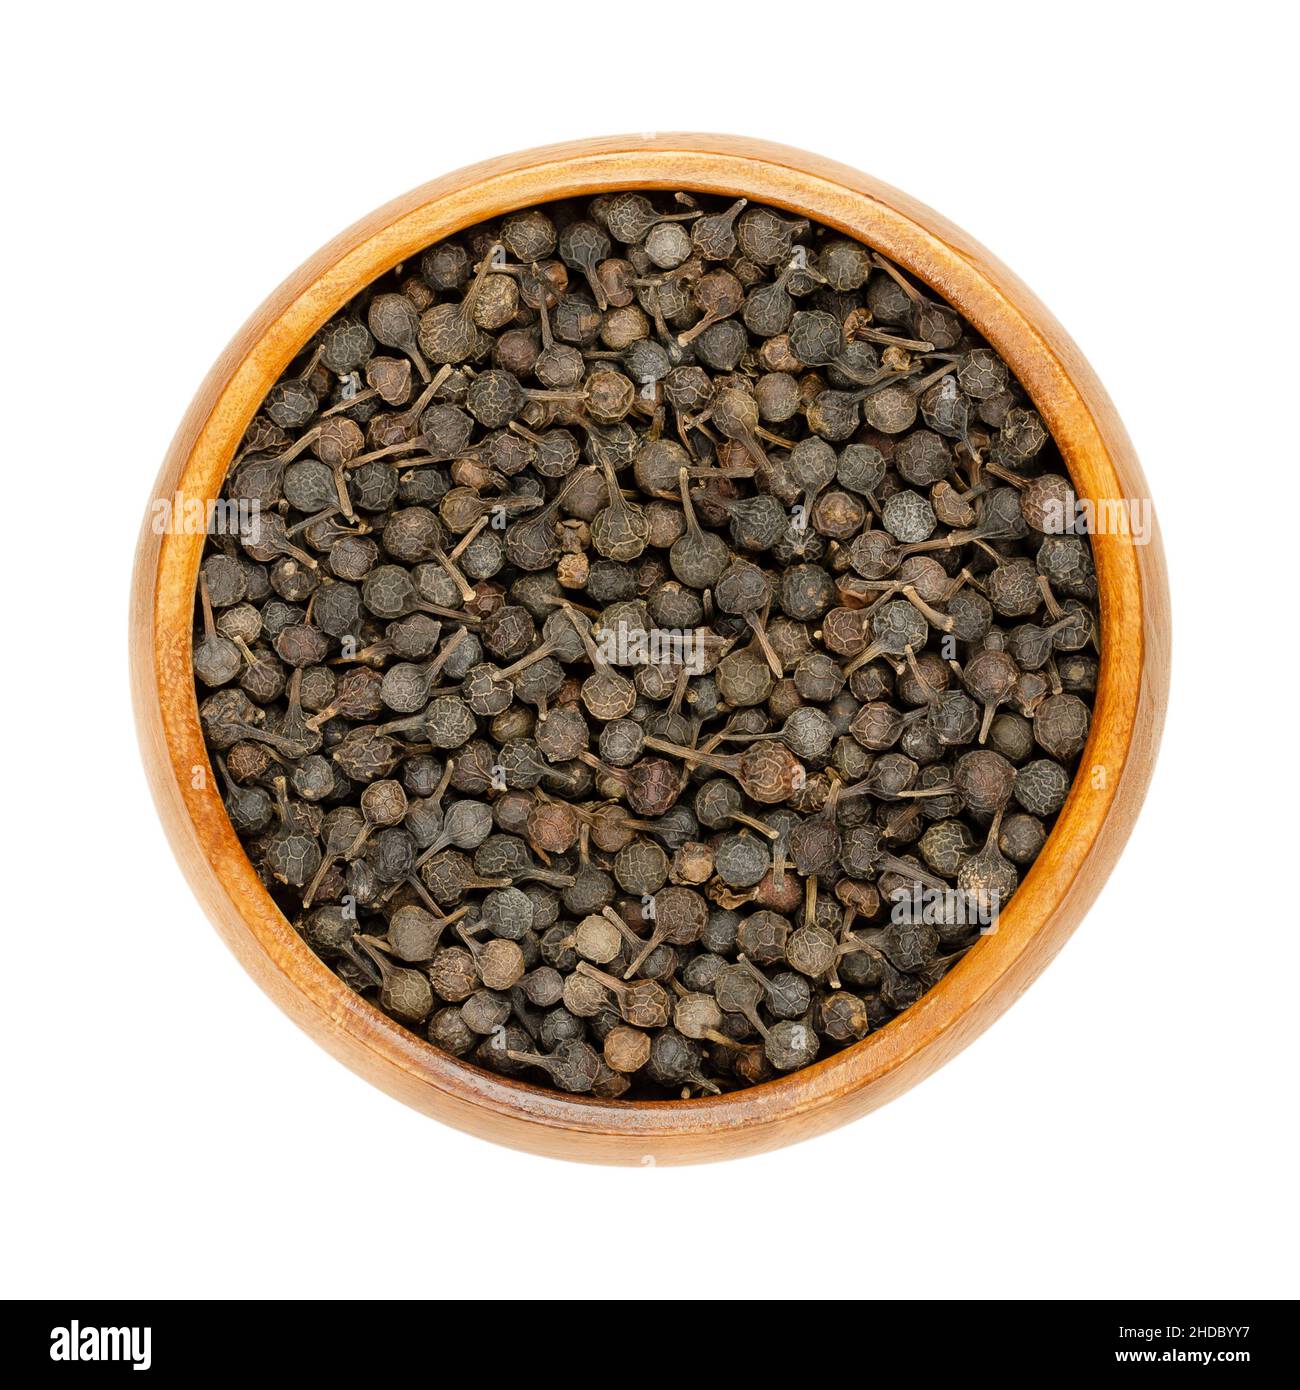 Cubeb Beeren bekannt als Schwanz Pfeffer oder Java-Pfeffer in Holzschüssel. Dunkelbraune Beeren mit ihren Stielen noch befestigt. Getrocknete Früchte von Piper cubeba. Stockfoto